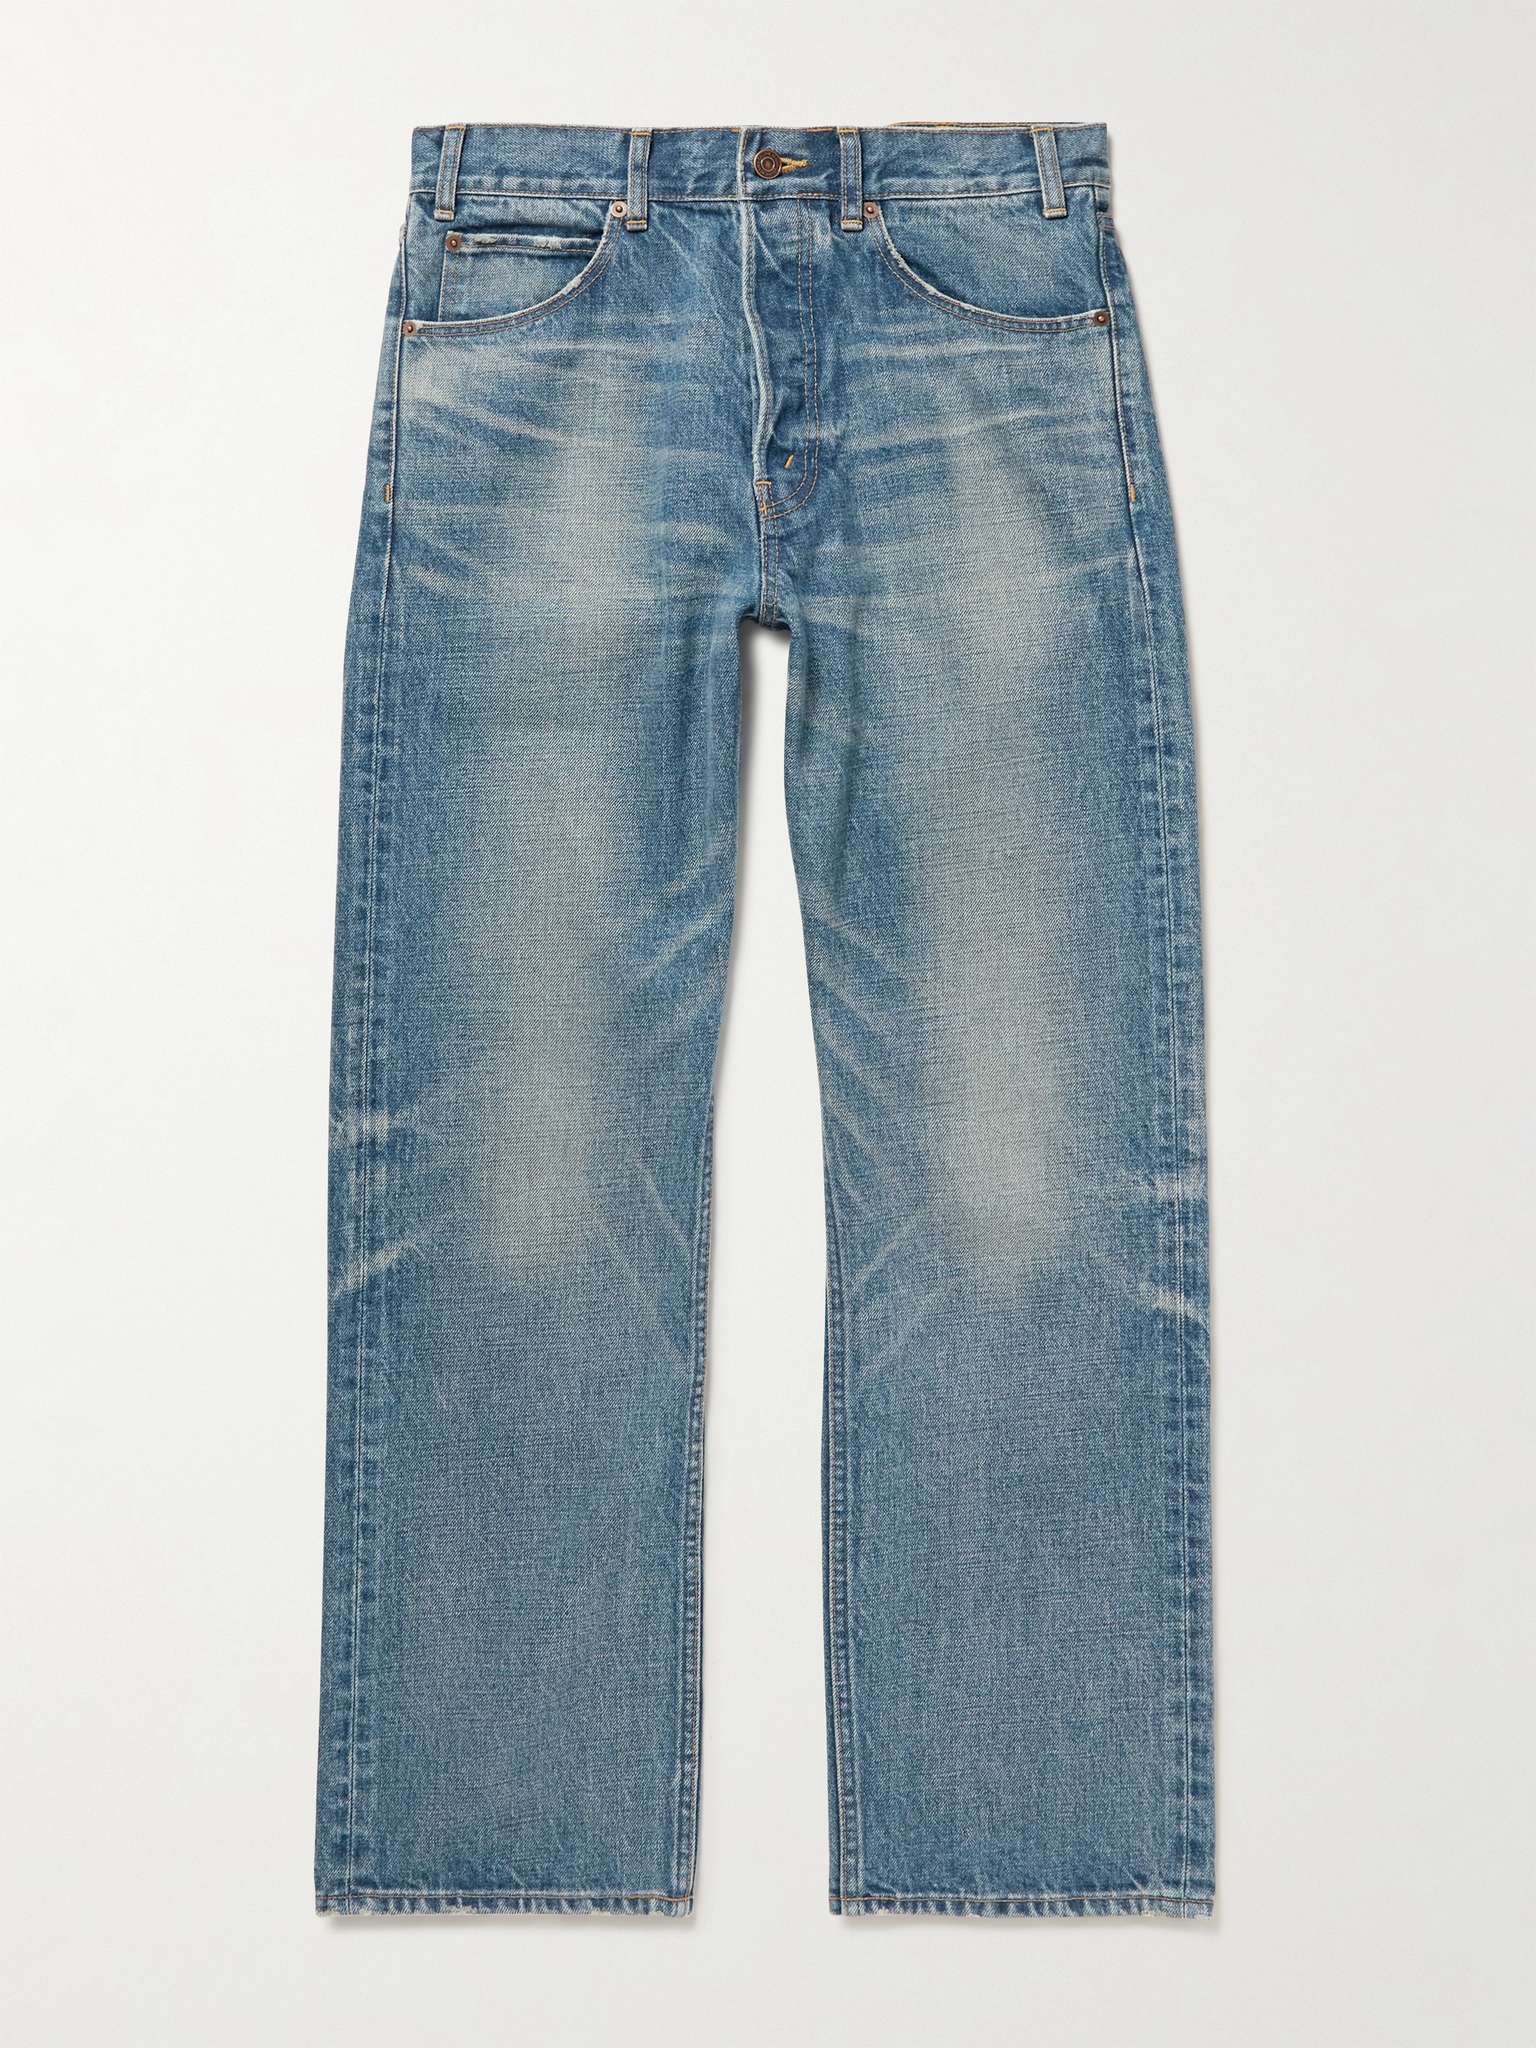 Blue Kurt Straight-Leg Jeans | CELINE HOMME | MR PORTER